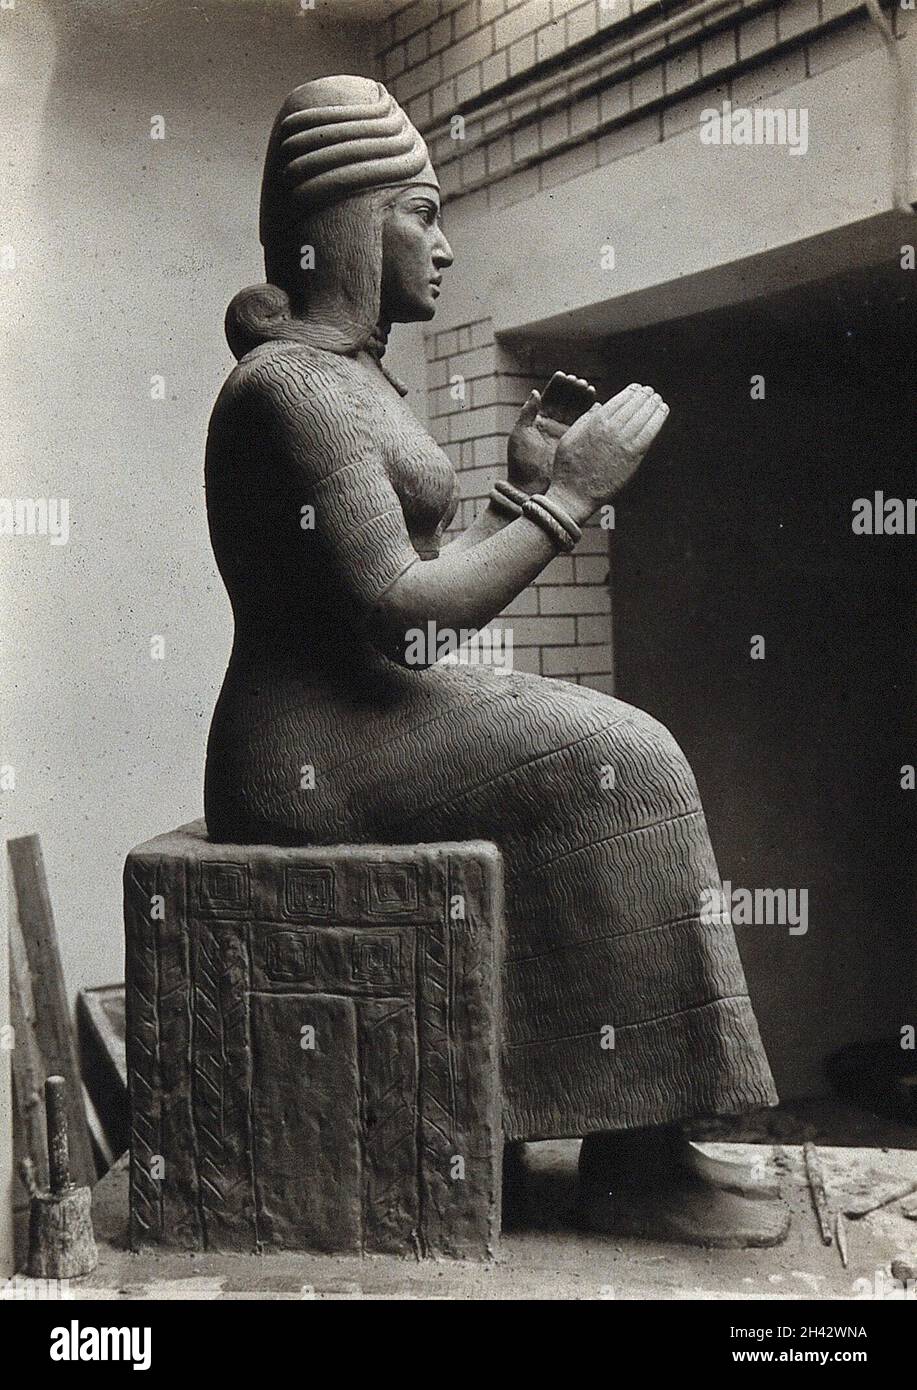 Una scultura di Guna, divinità mesopotamiana di guarigione, con un cane al suo fianco. Fotografia. Foto Stock